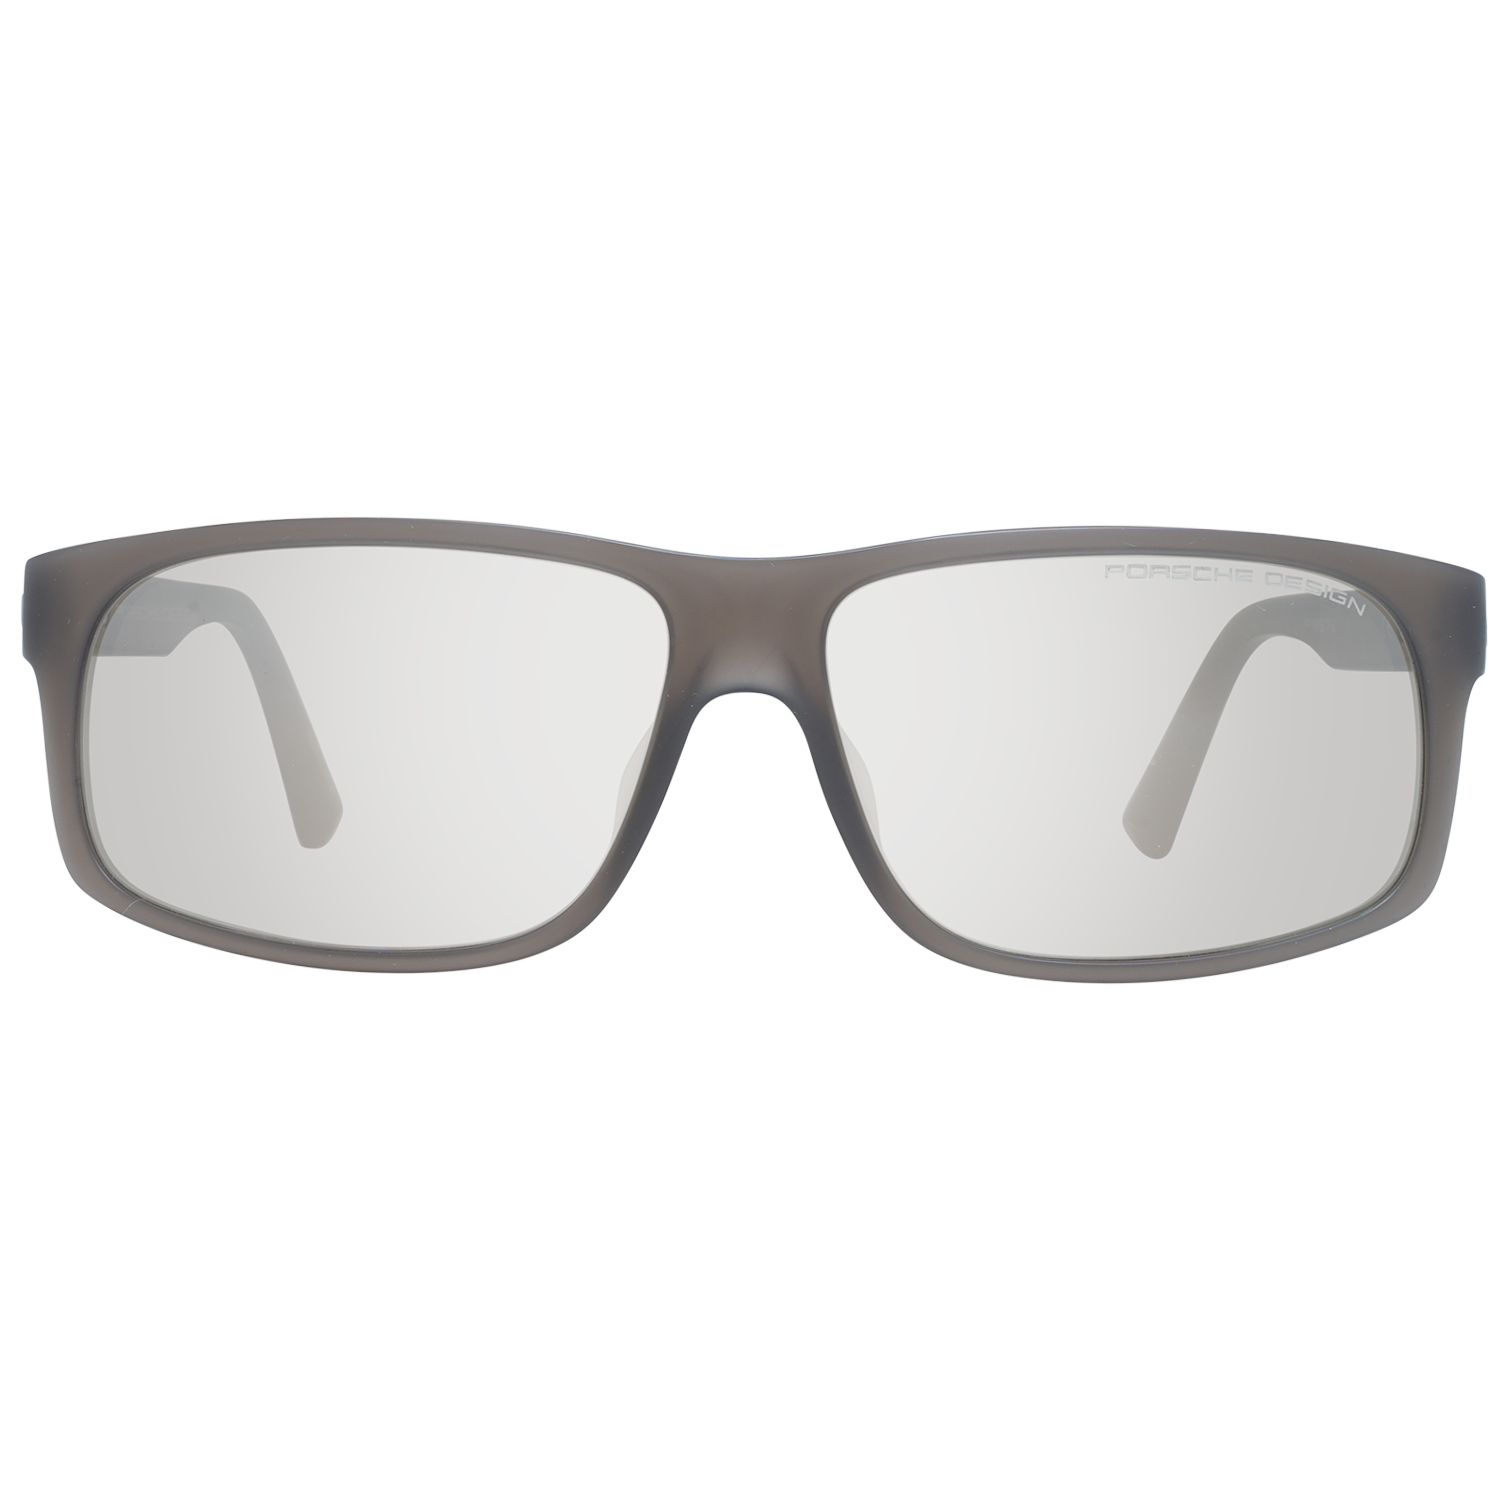 Porsche Design Sunglasses Porsche Design Sunglasses P8572 B 64 Eyeglasses Eyewear UK USA Australia 